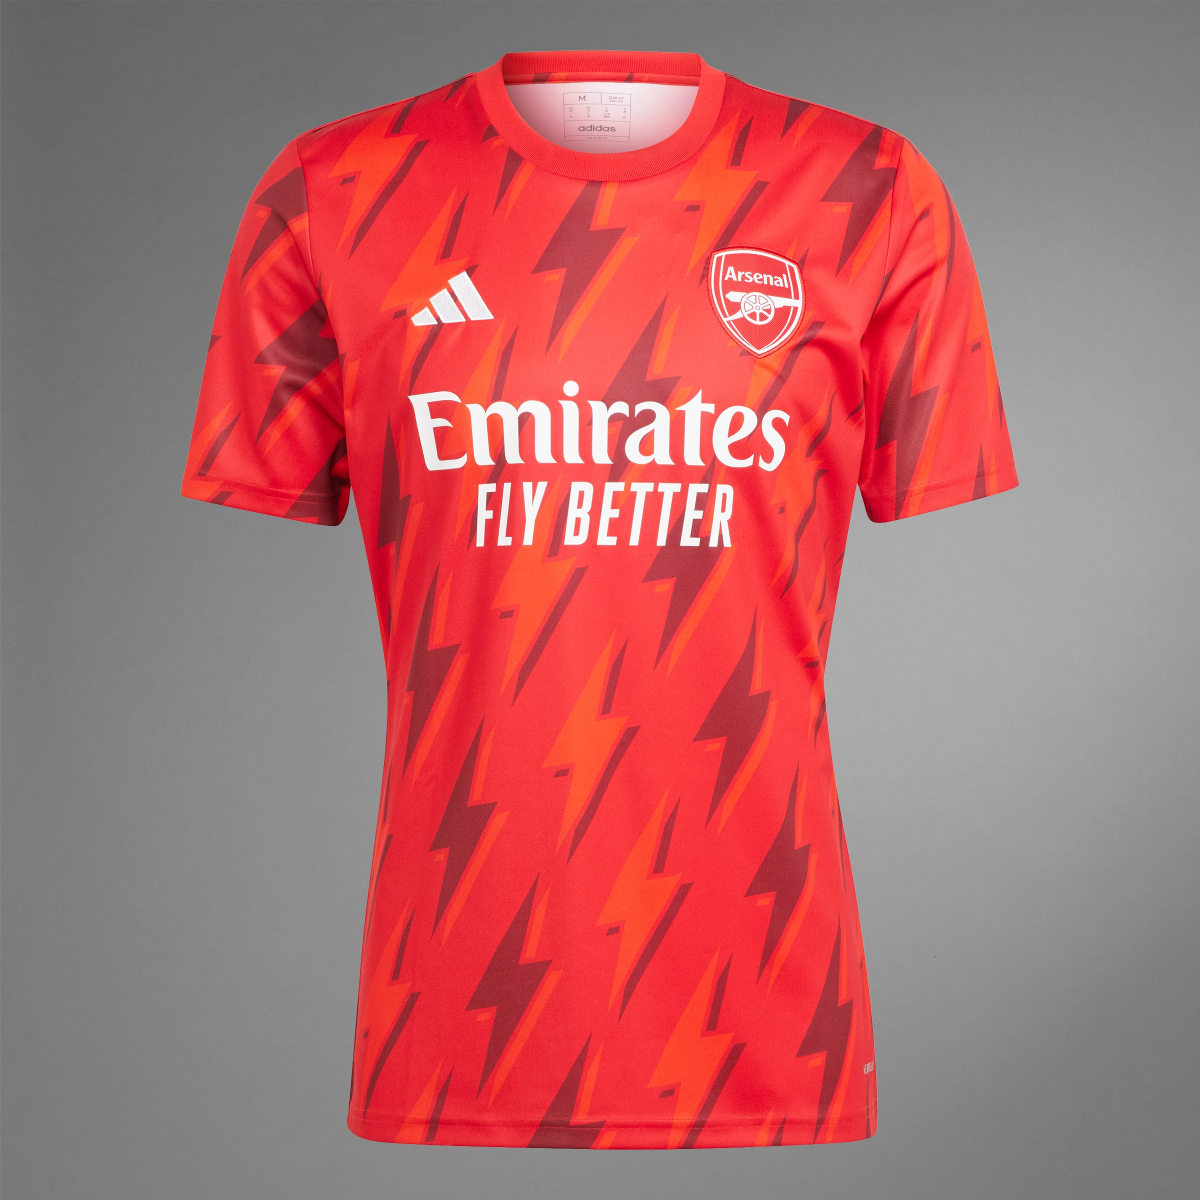 Adidas Arsenal Pre-Match Jersey. 10